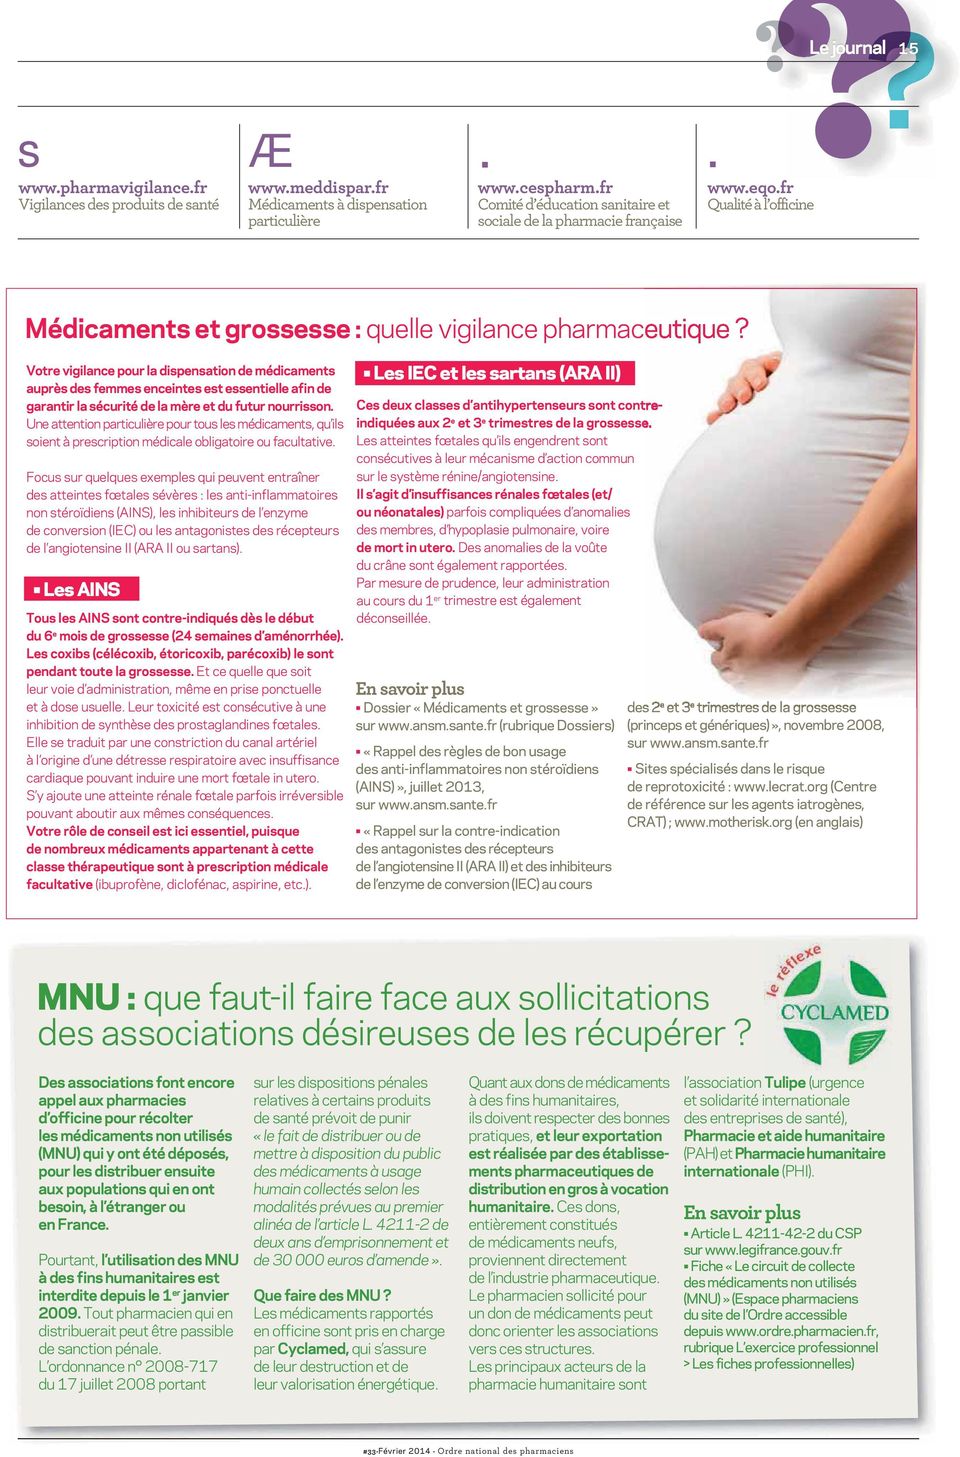 Votre vigilance pour la dispensation de médicaments auprès des femmes enceintes est essentielle afin de garantir la sécurité de la mère et du futur nourrisson.